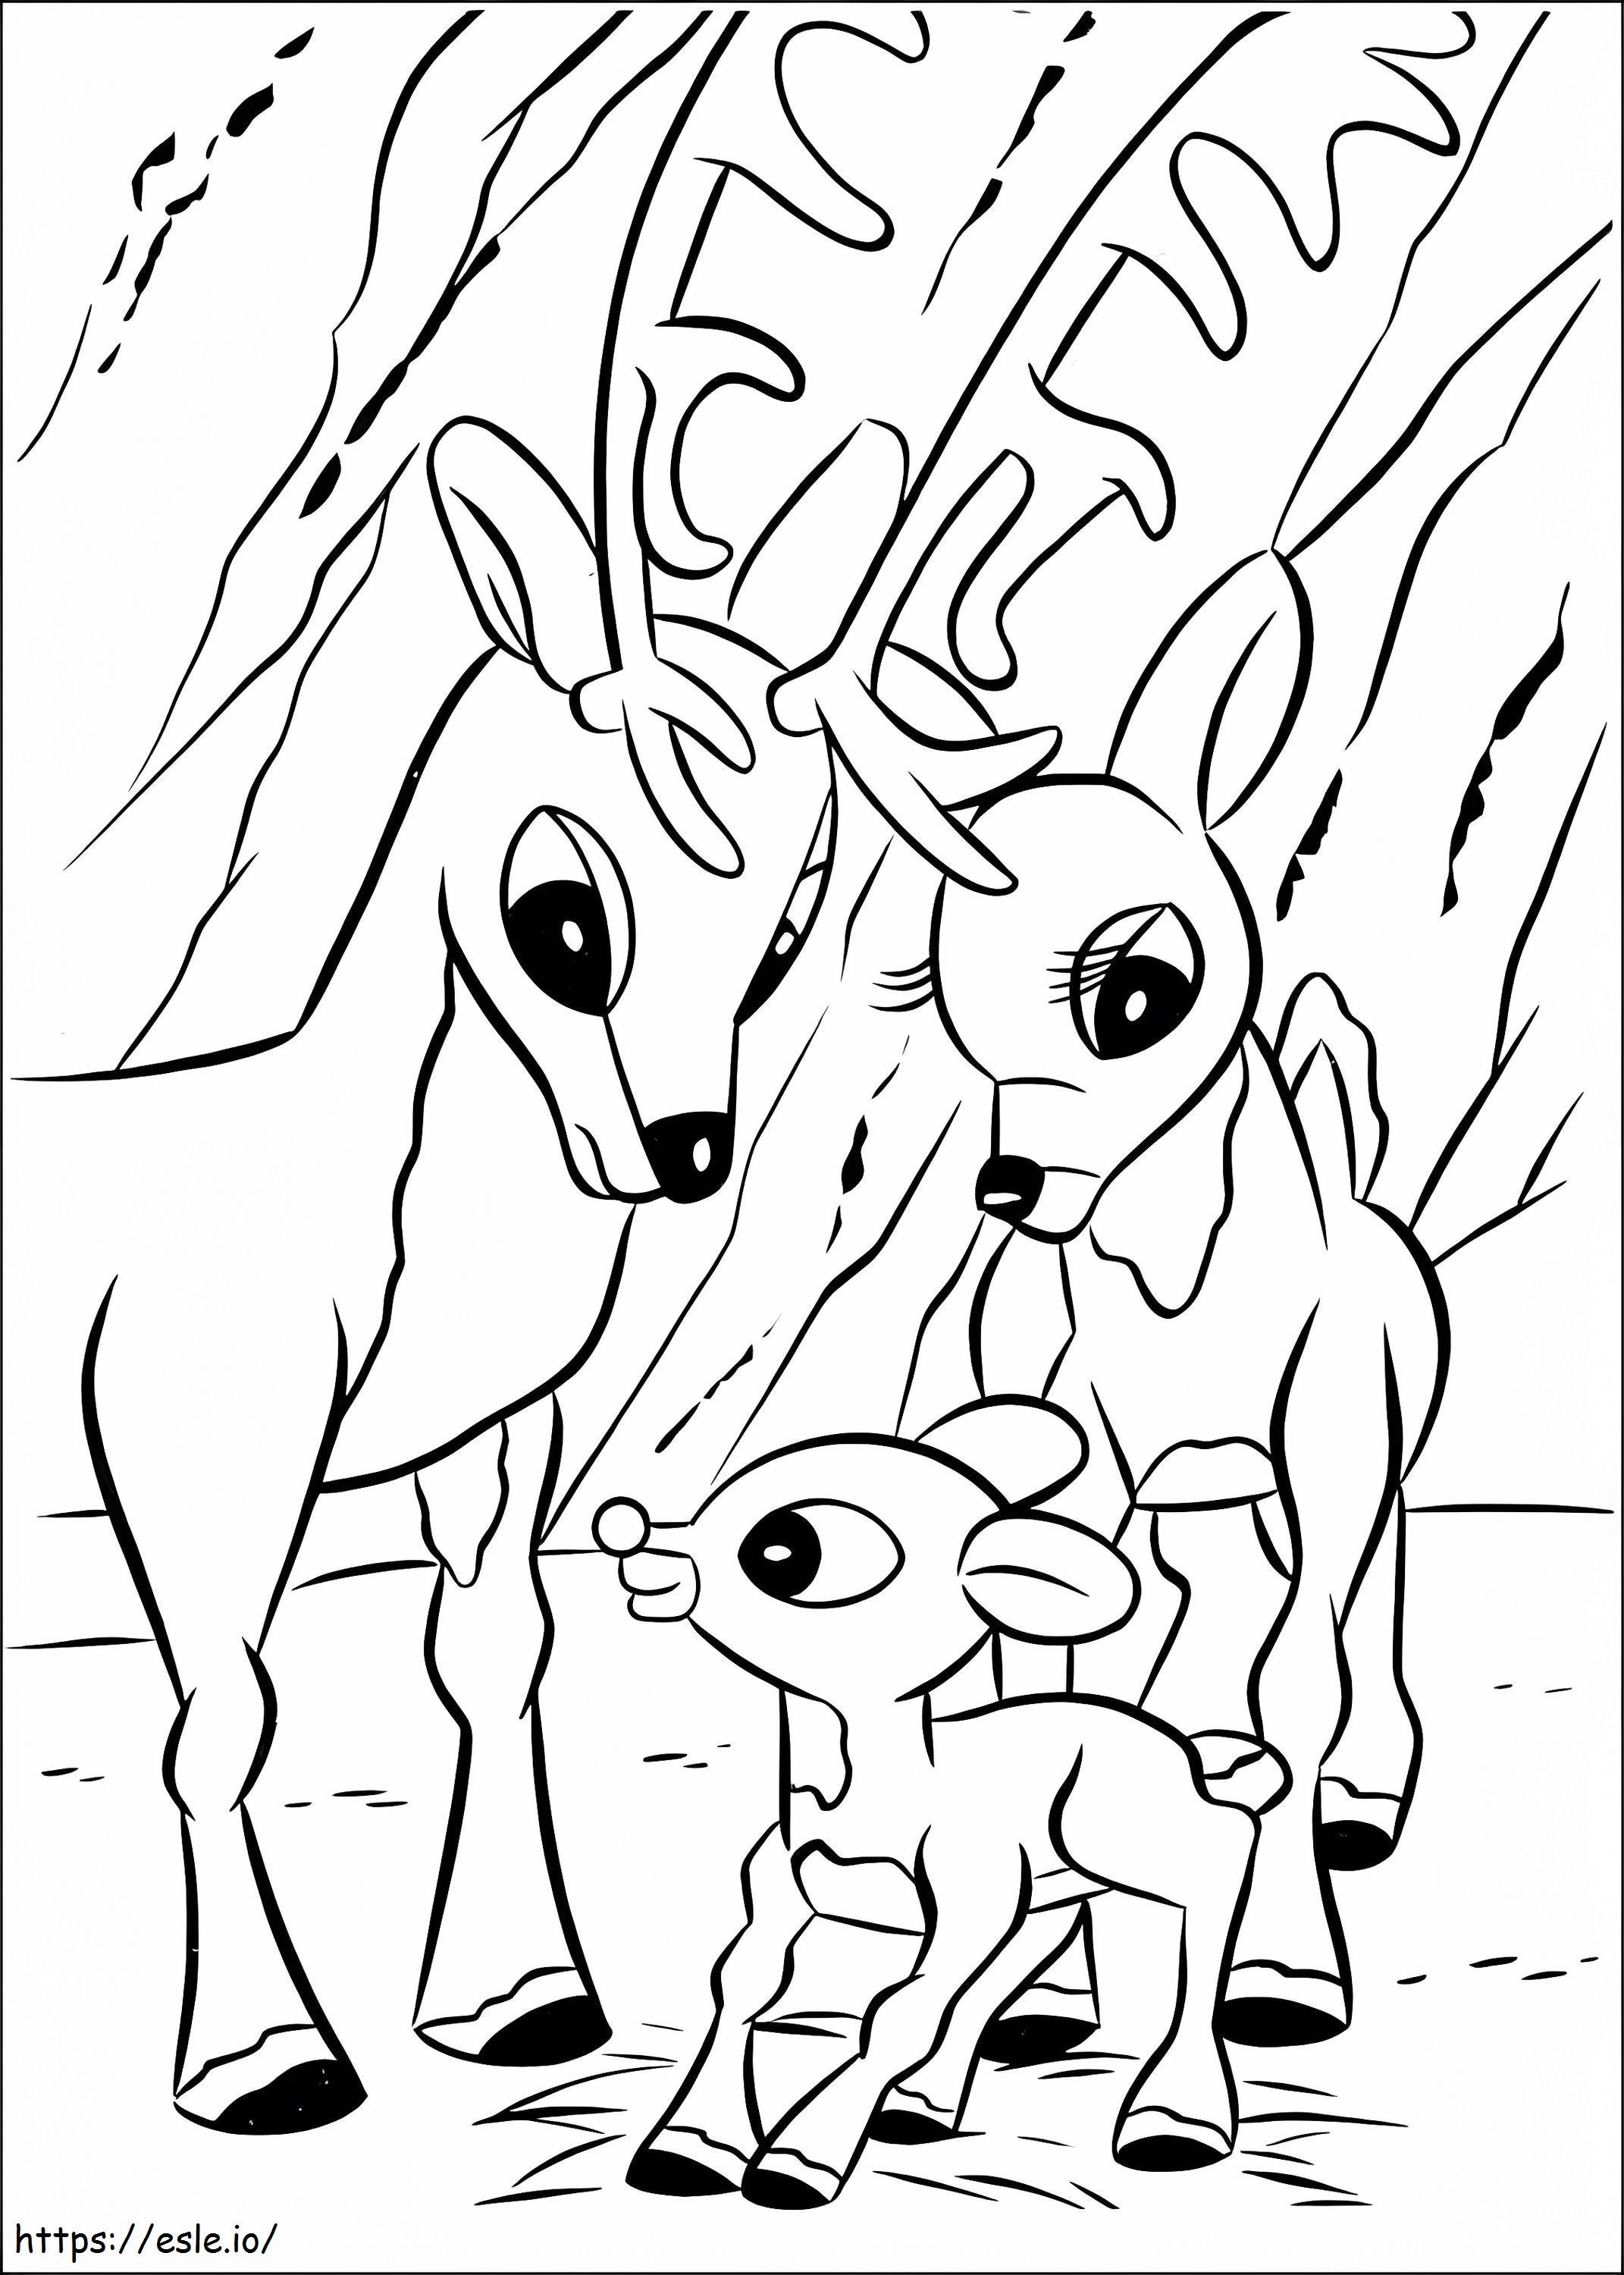 Rudolph und Familie ausmalbilder